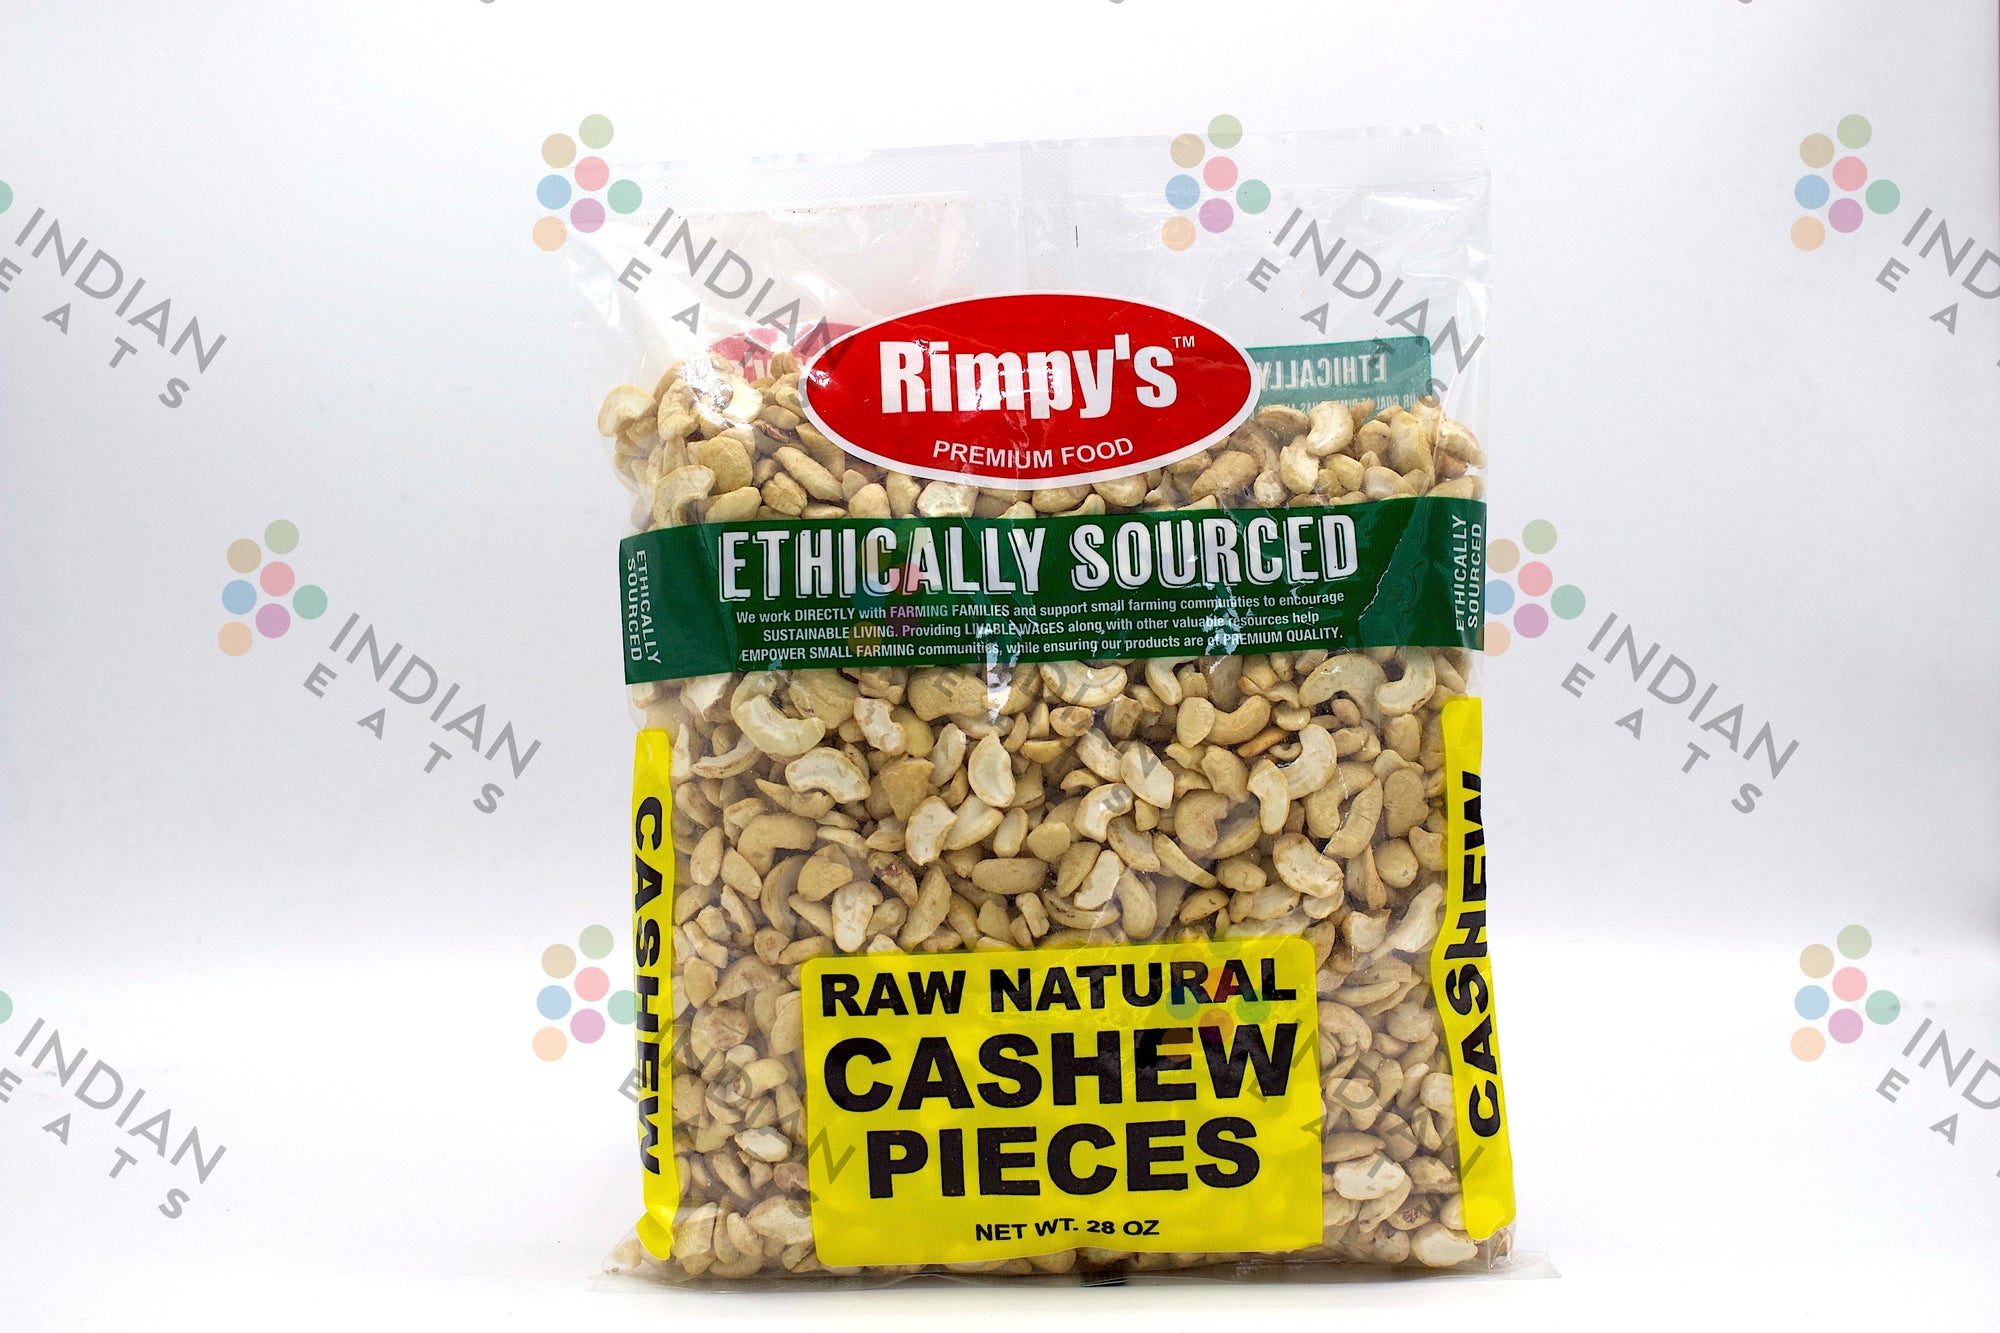 Rimpy's Cashew Pieces